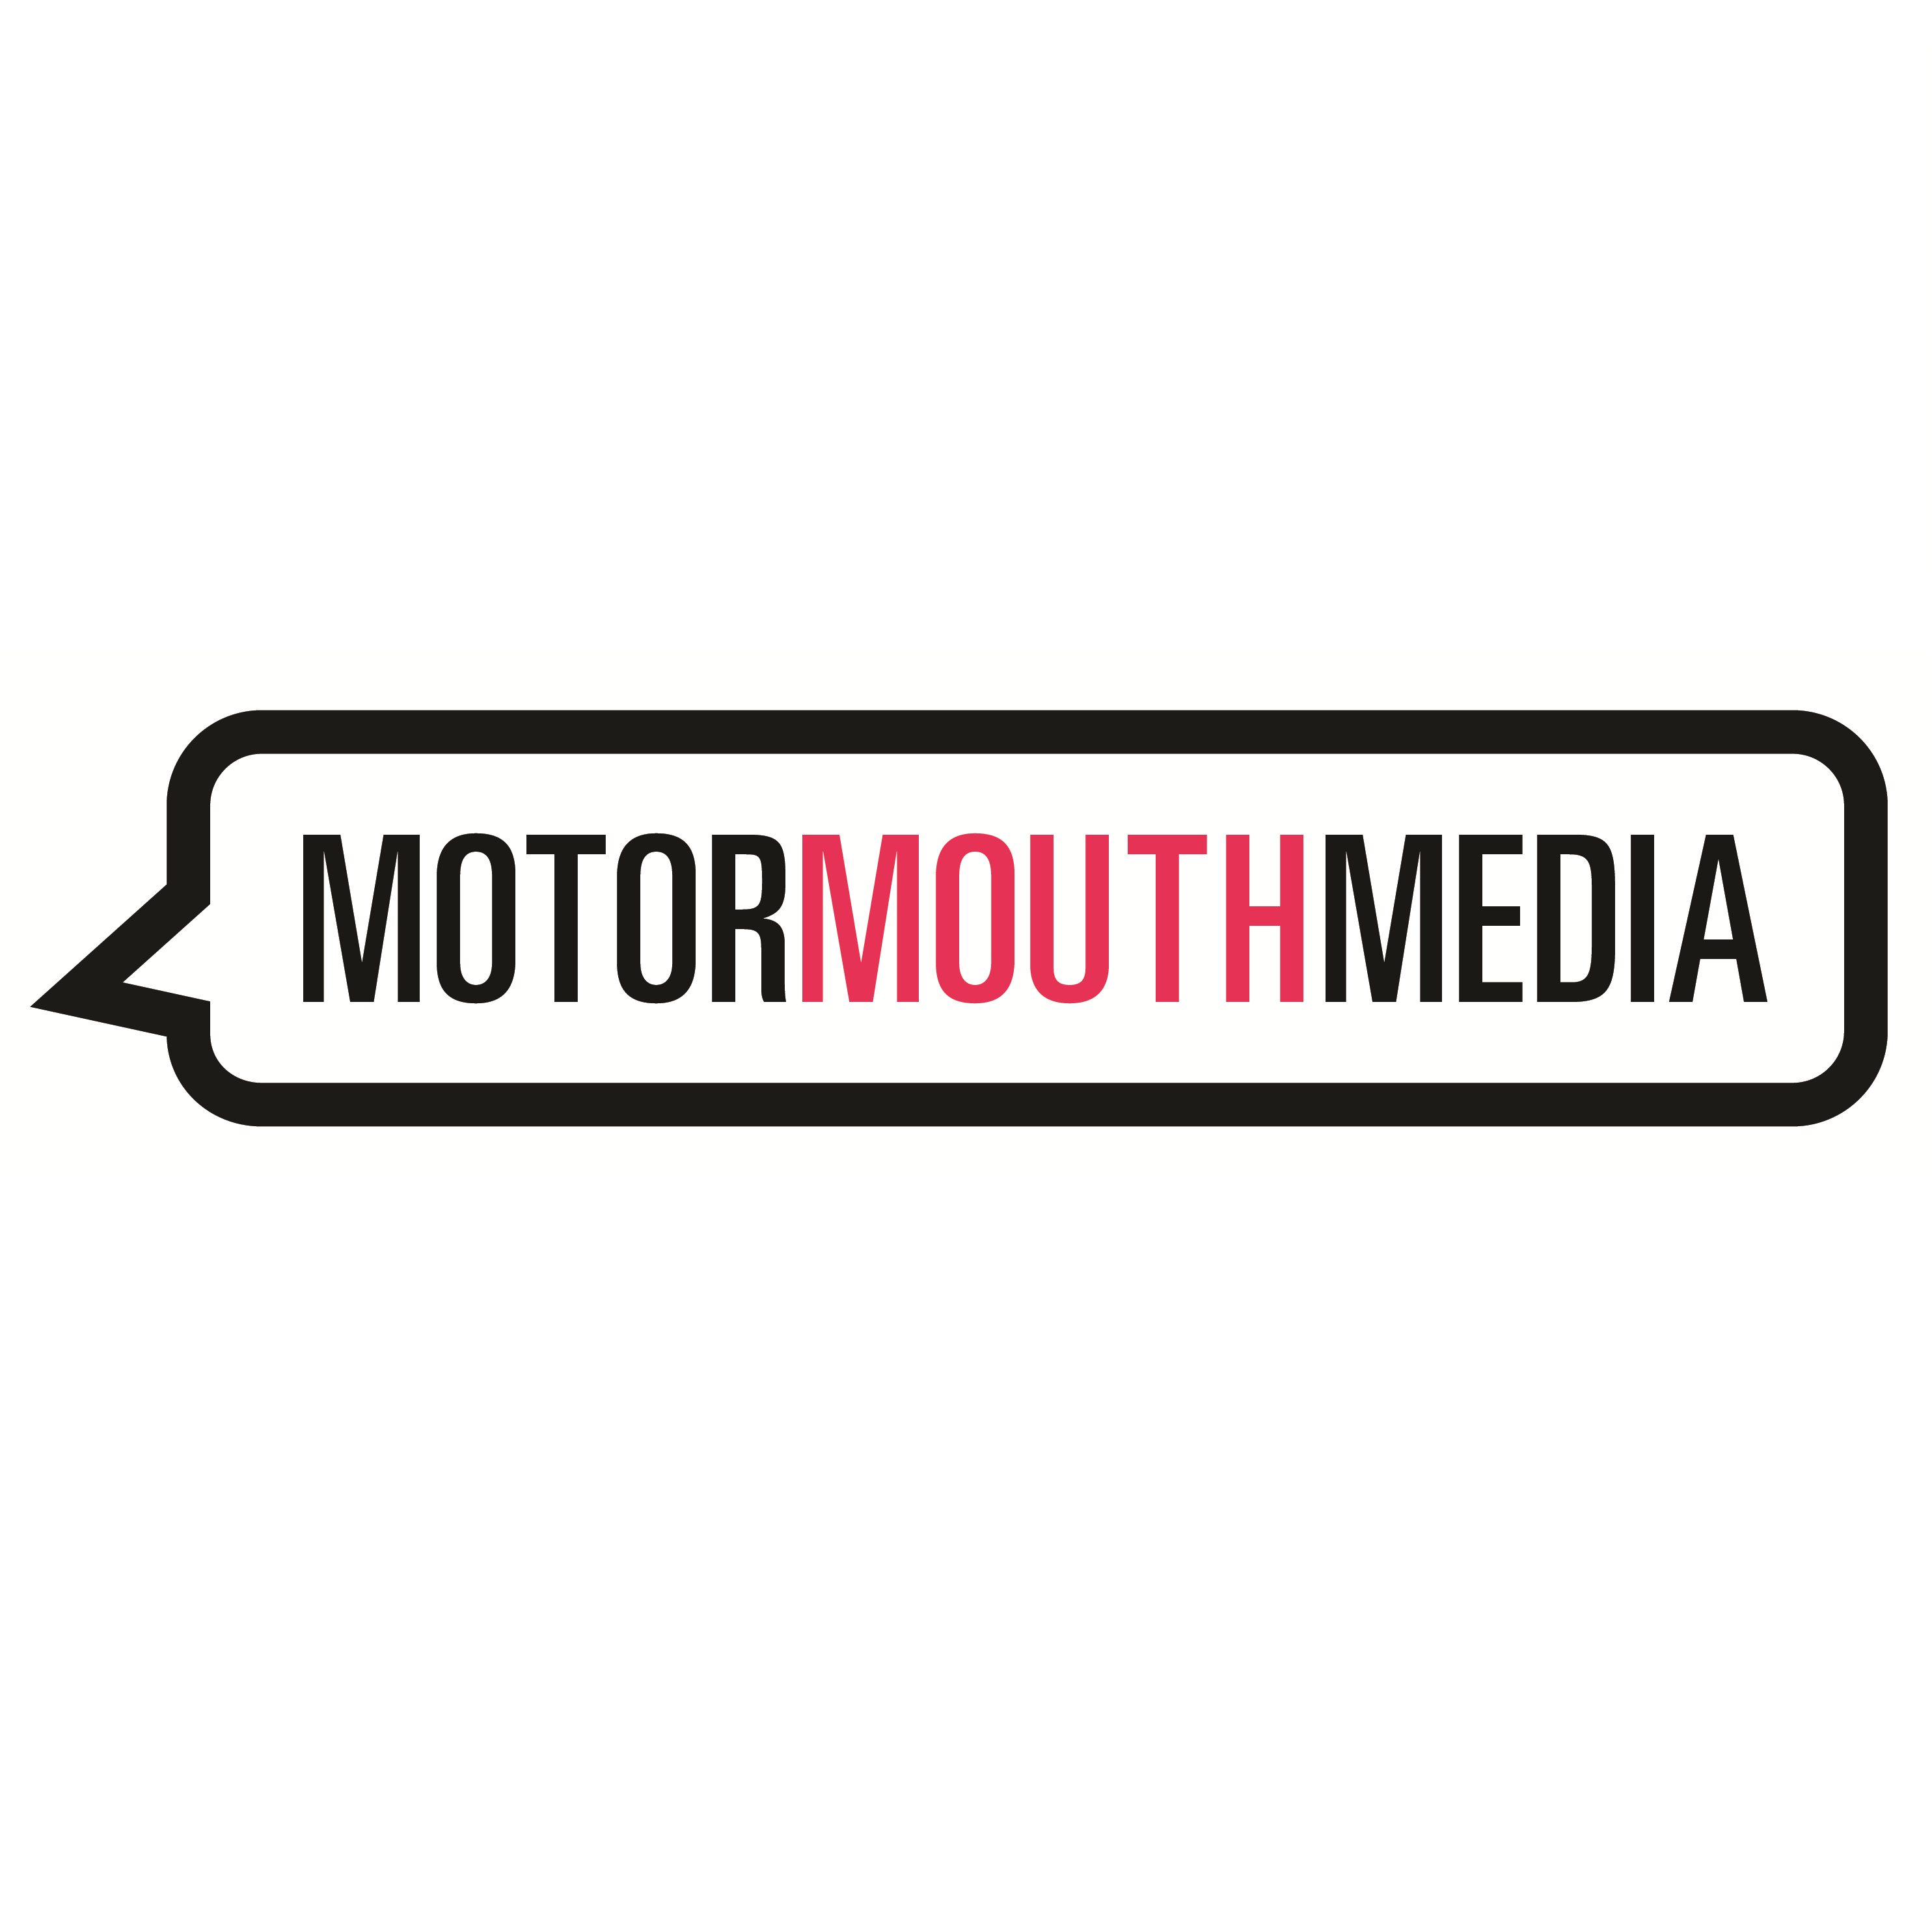 MotormouthMedia